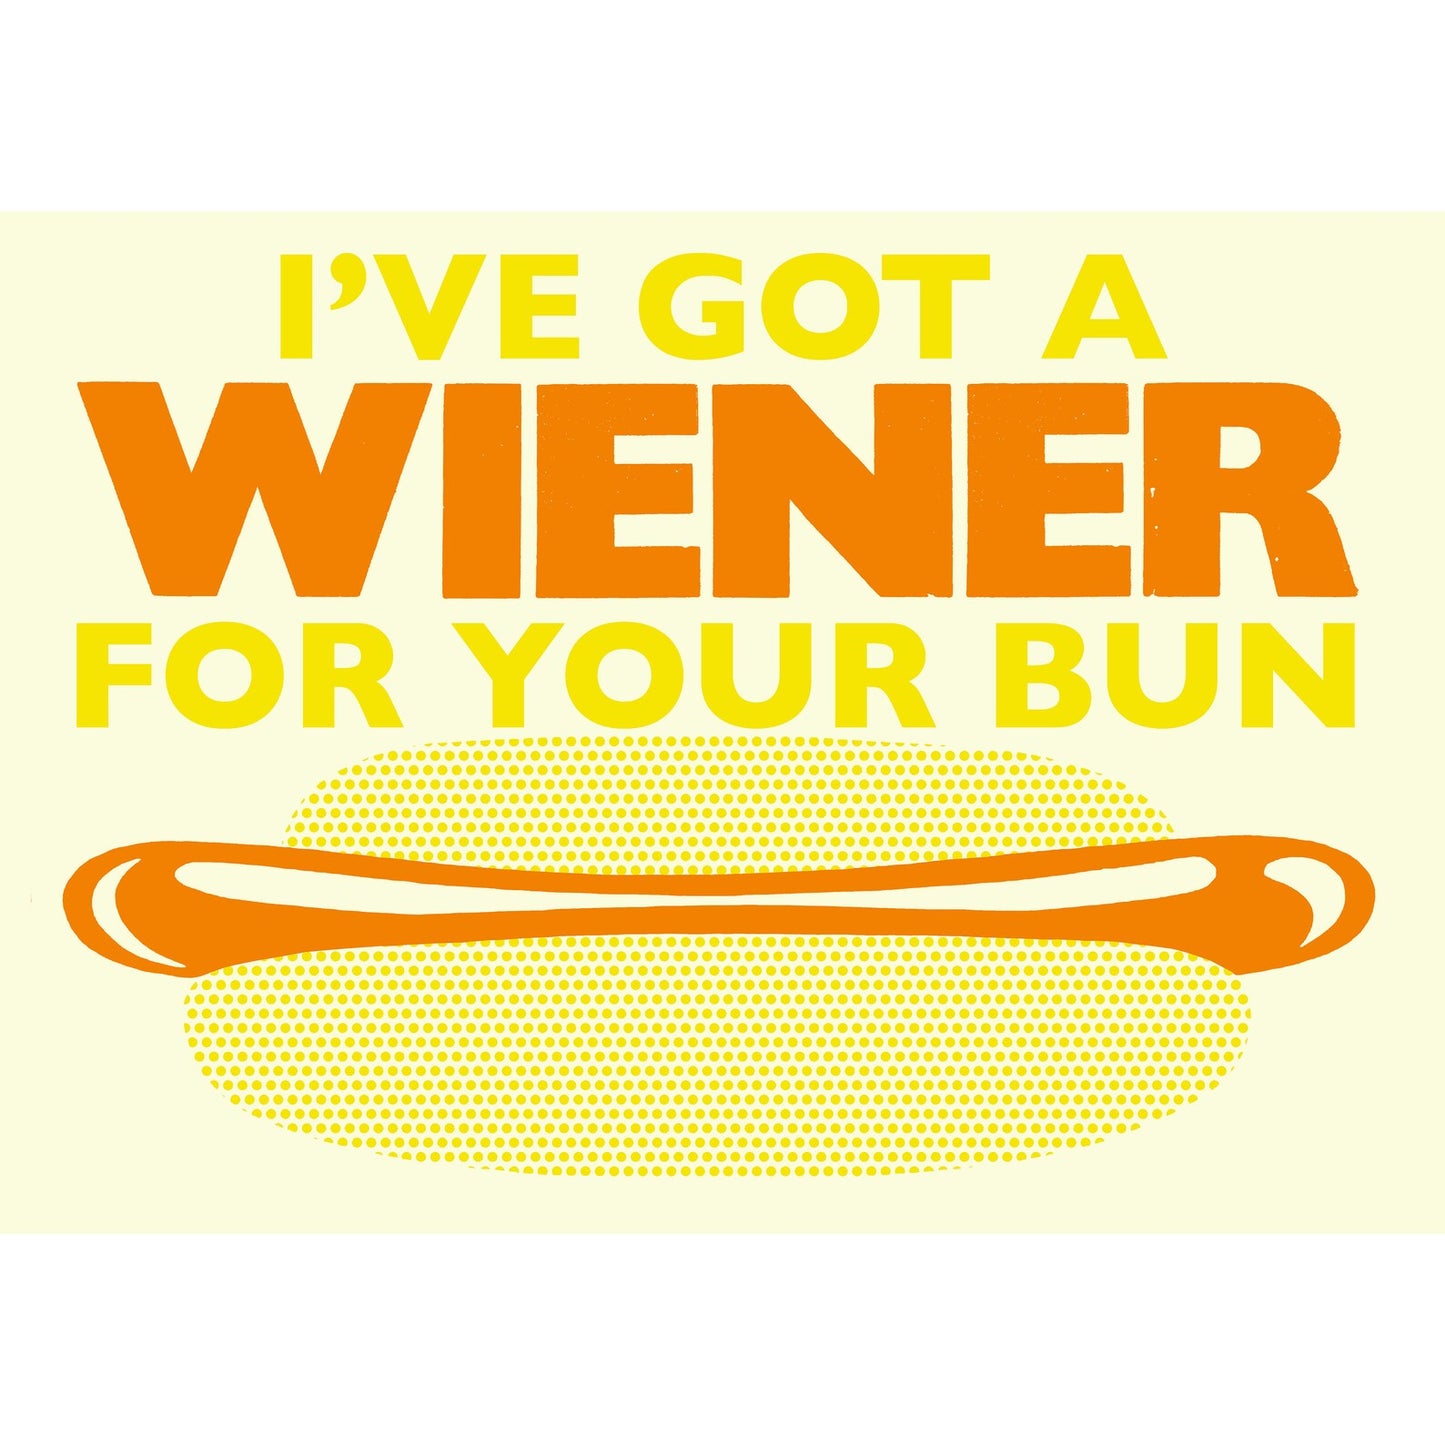 Wiener for your bun